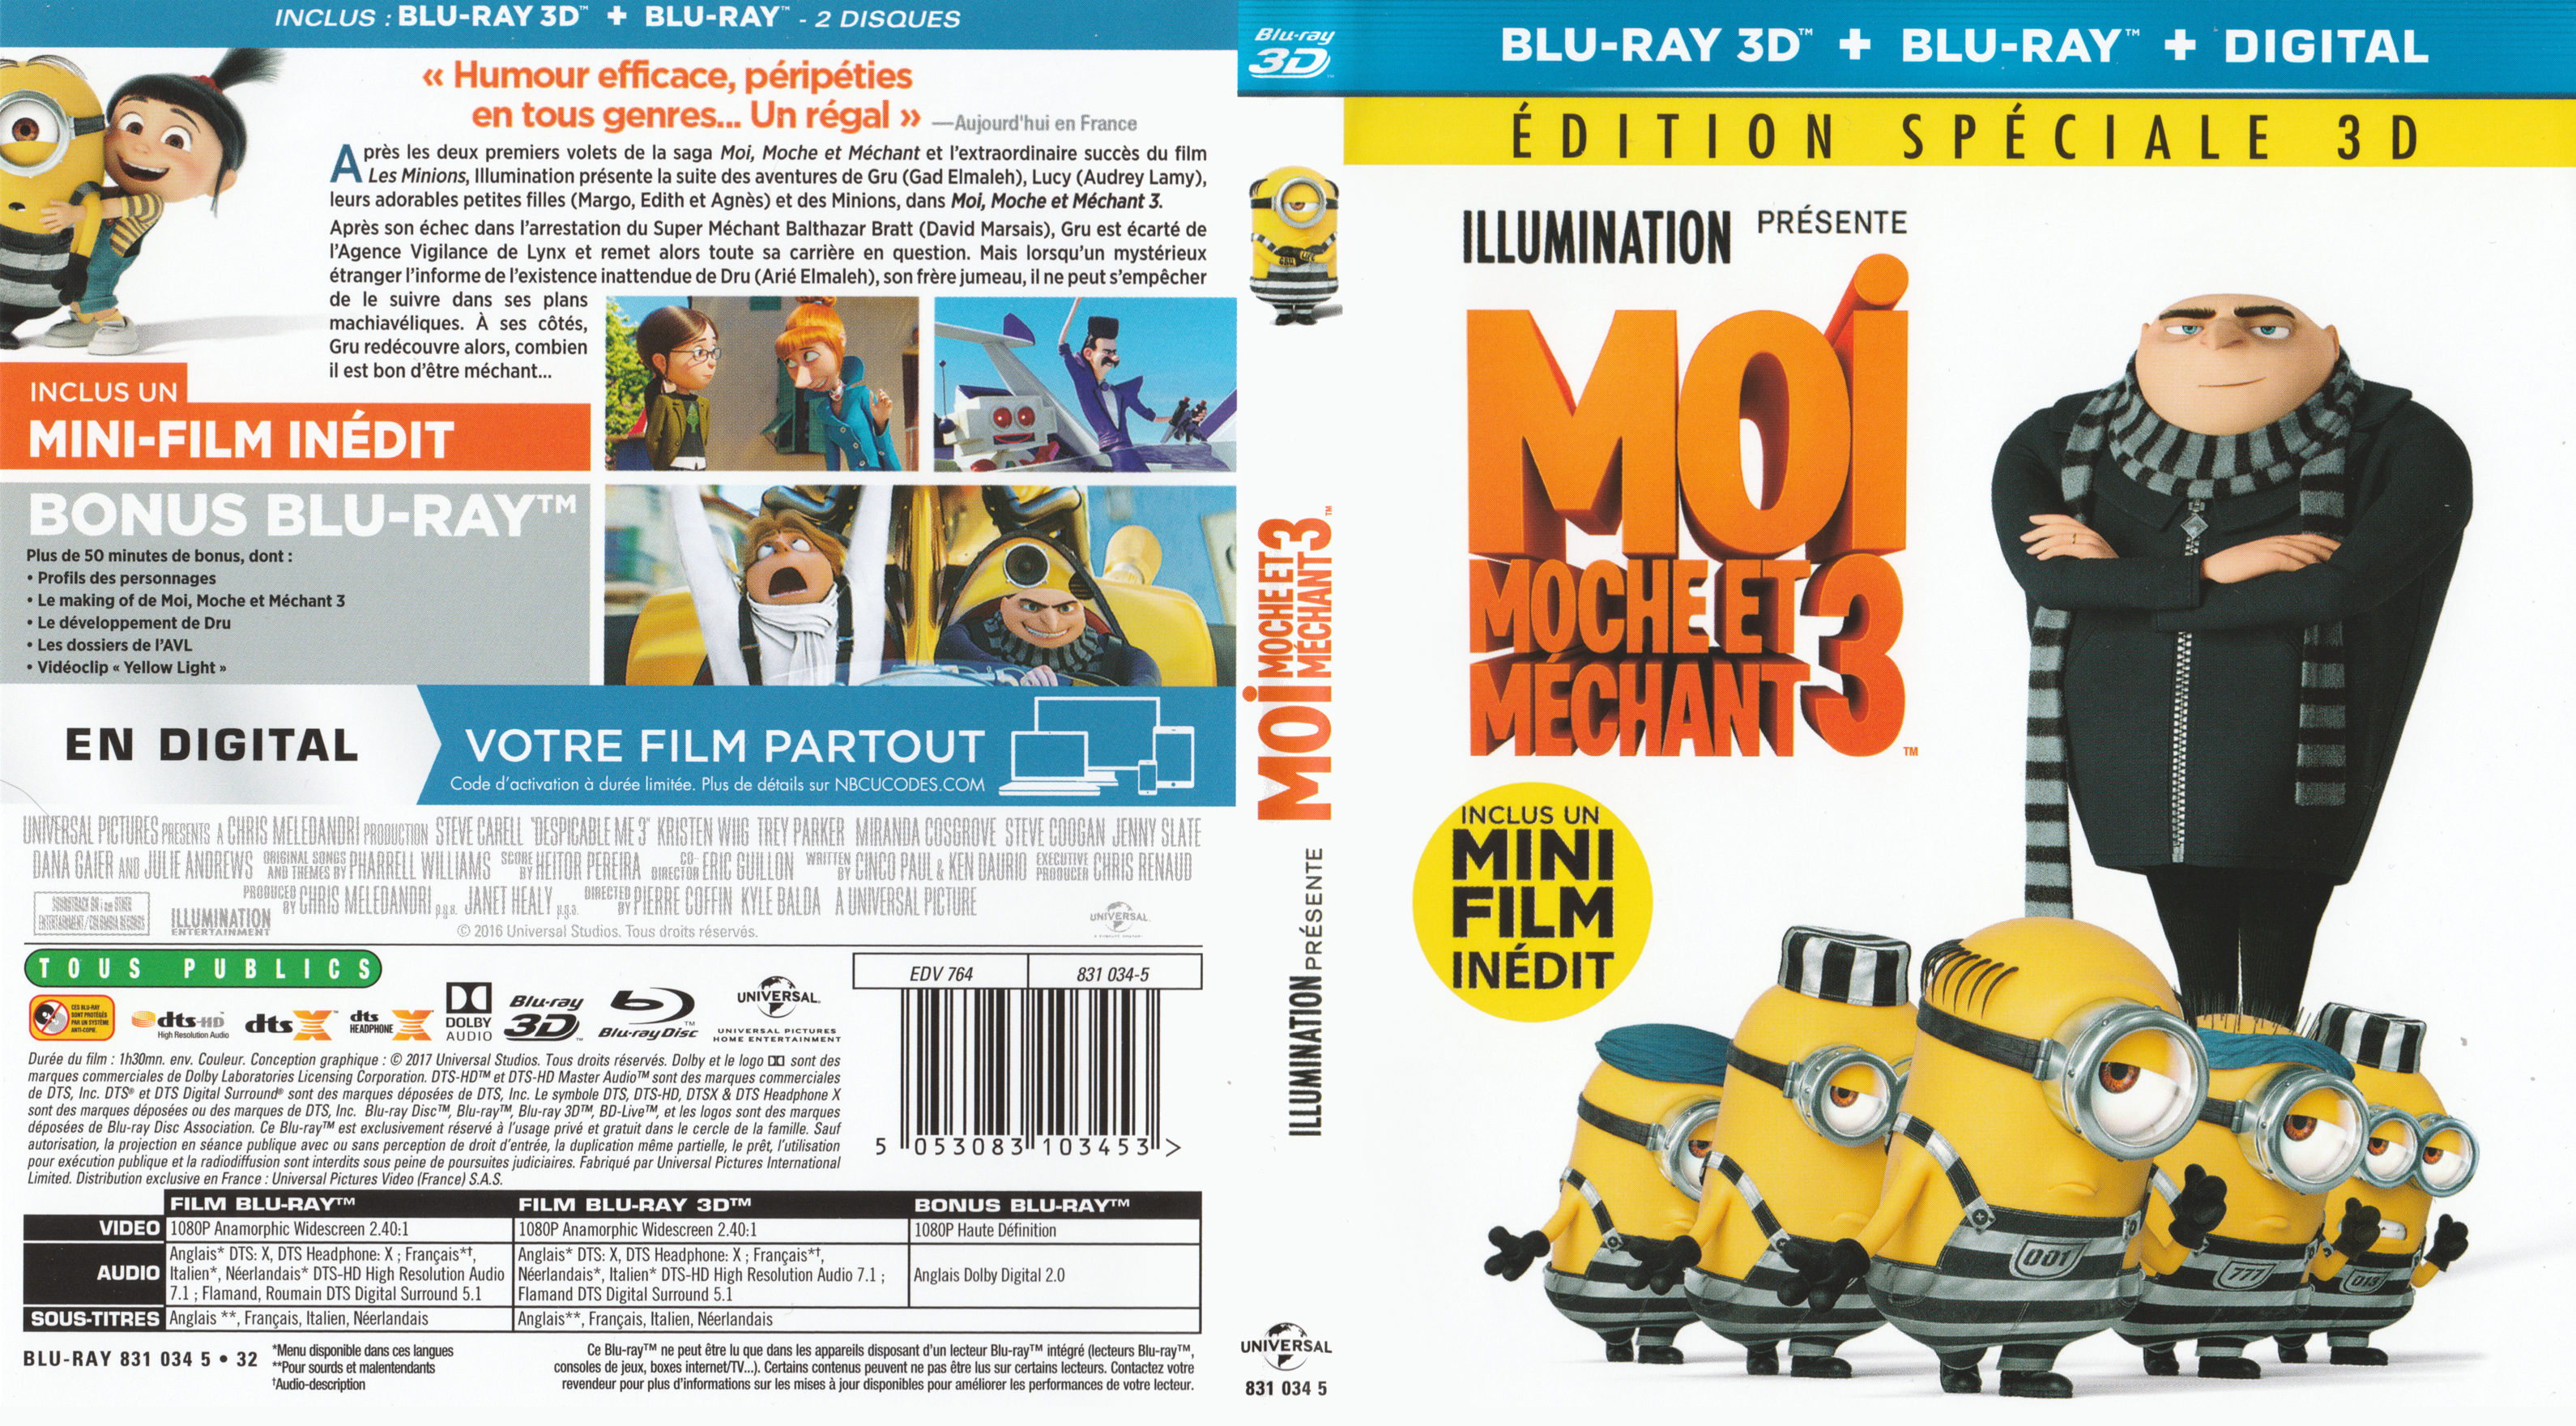 Jaquette DVD Moi moche et mechant 3 3D (BLU-RAY) v2